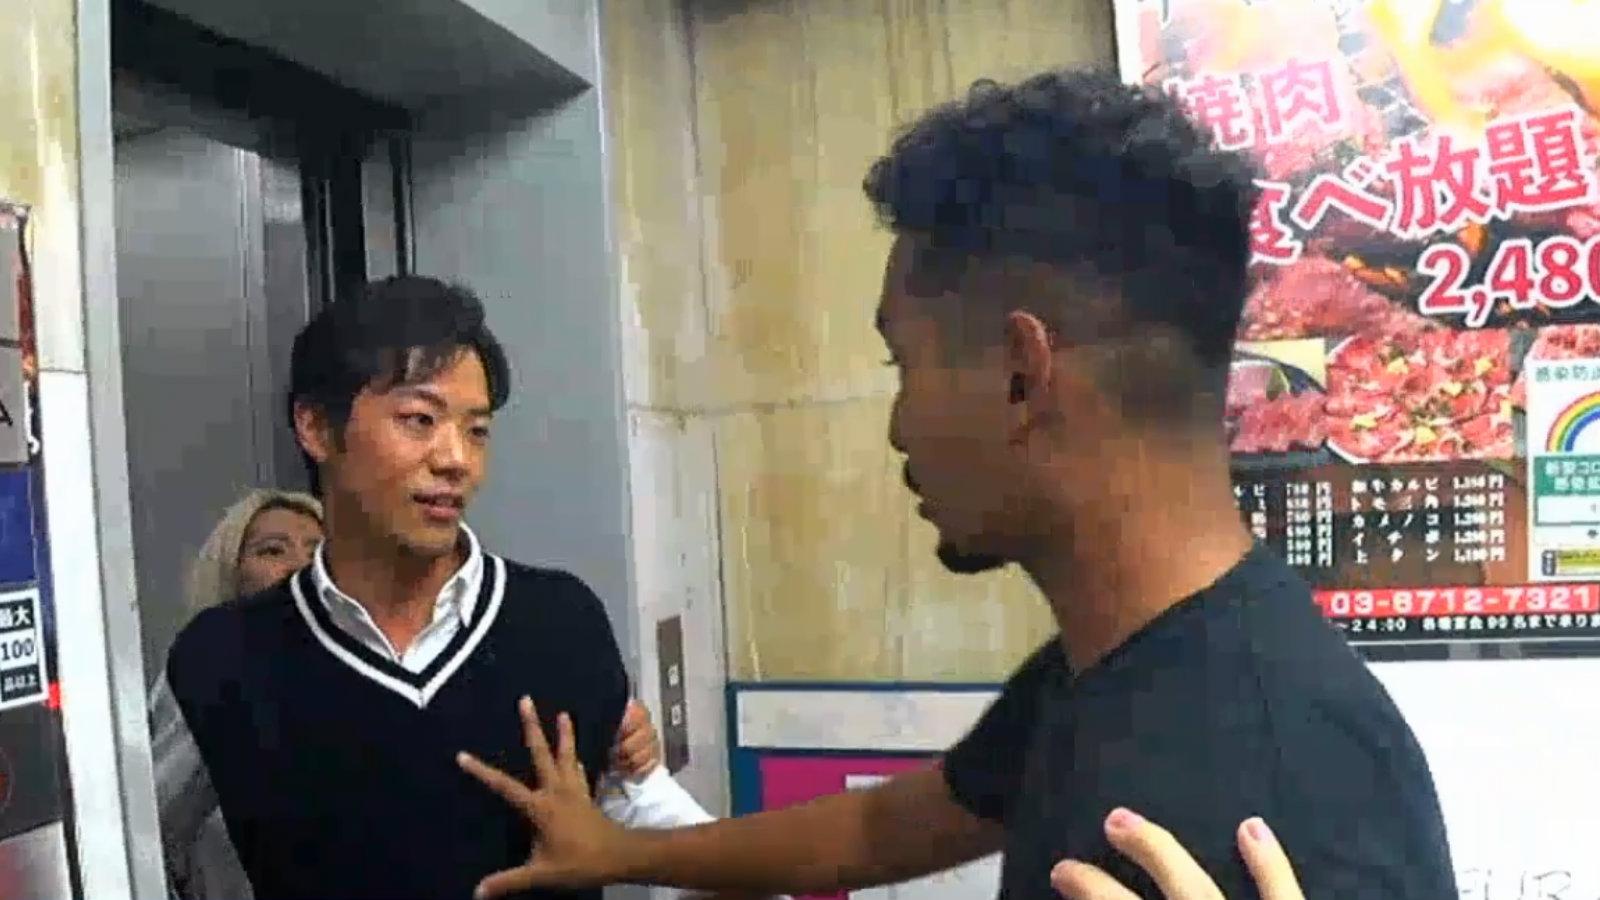 Two men fight in an elevator in Japan